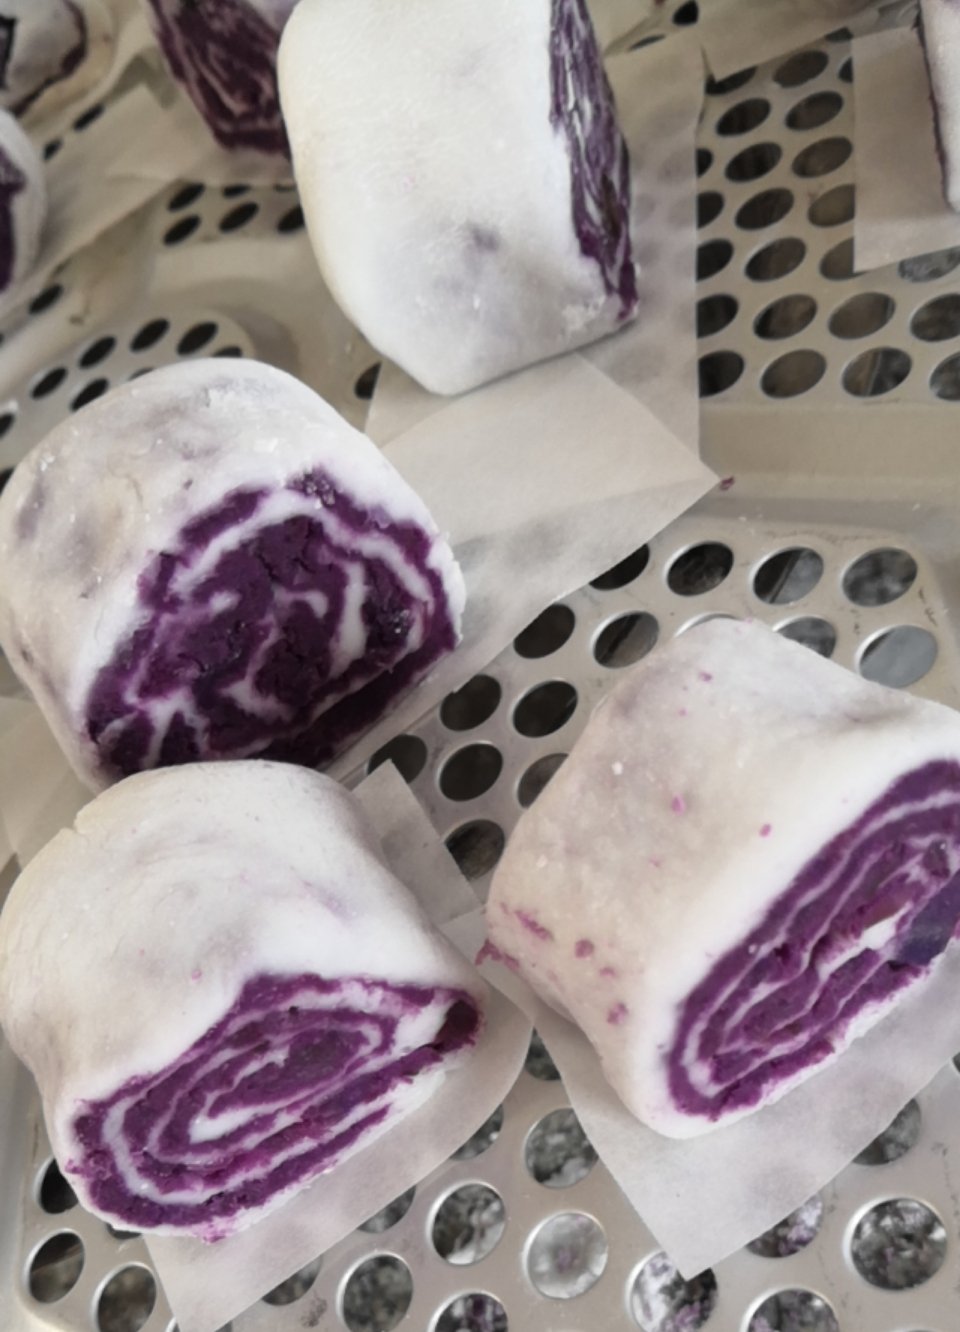 水晶紫薯卷(木薯淀粉版)